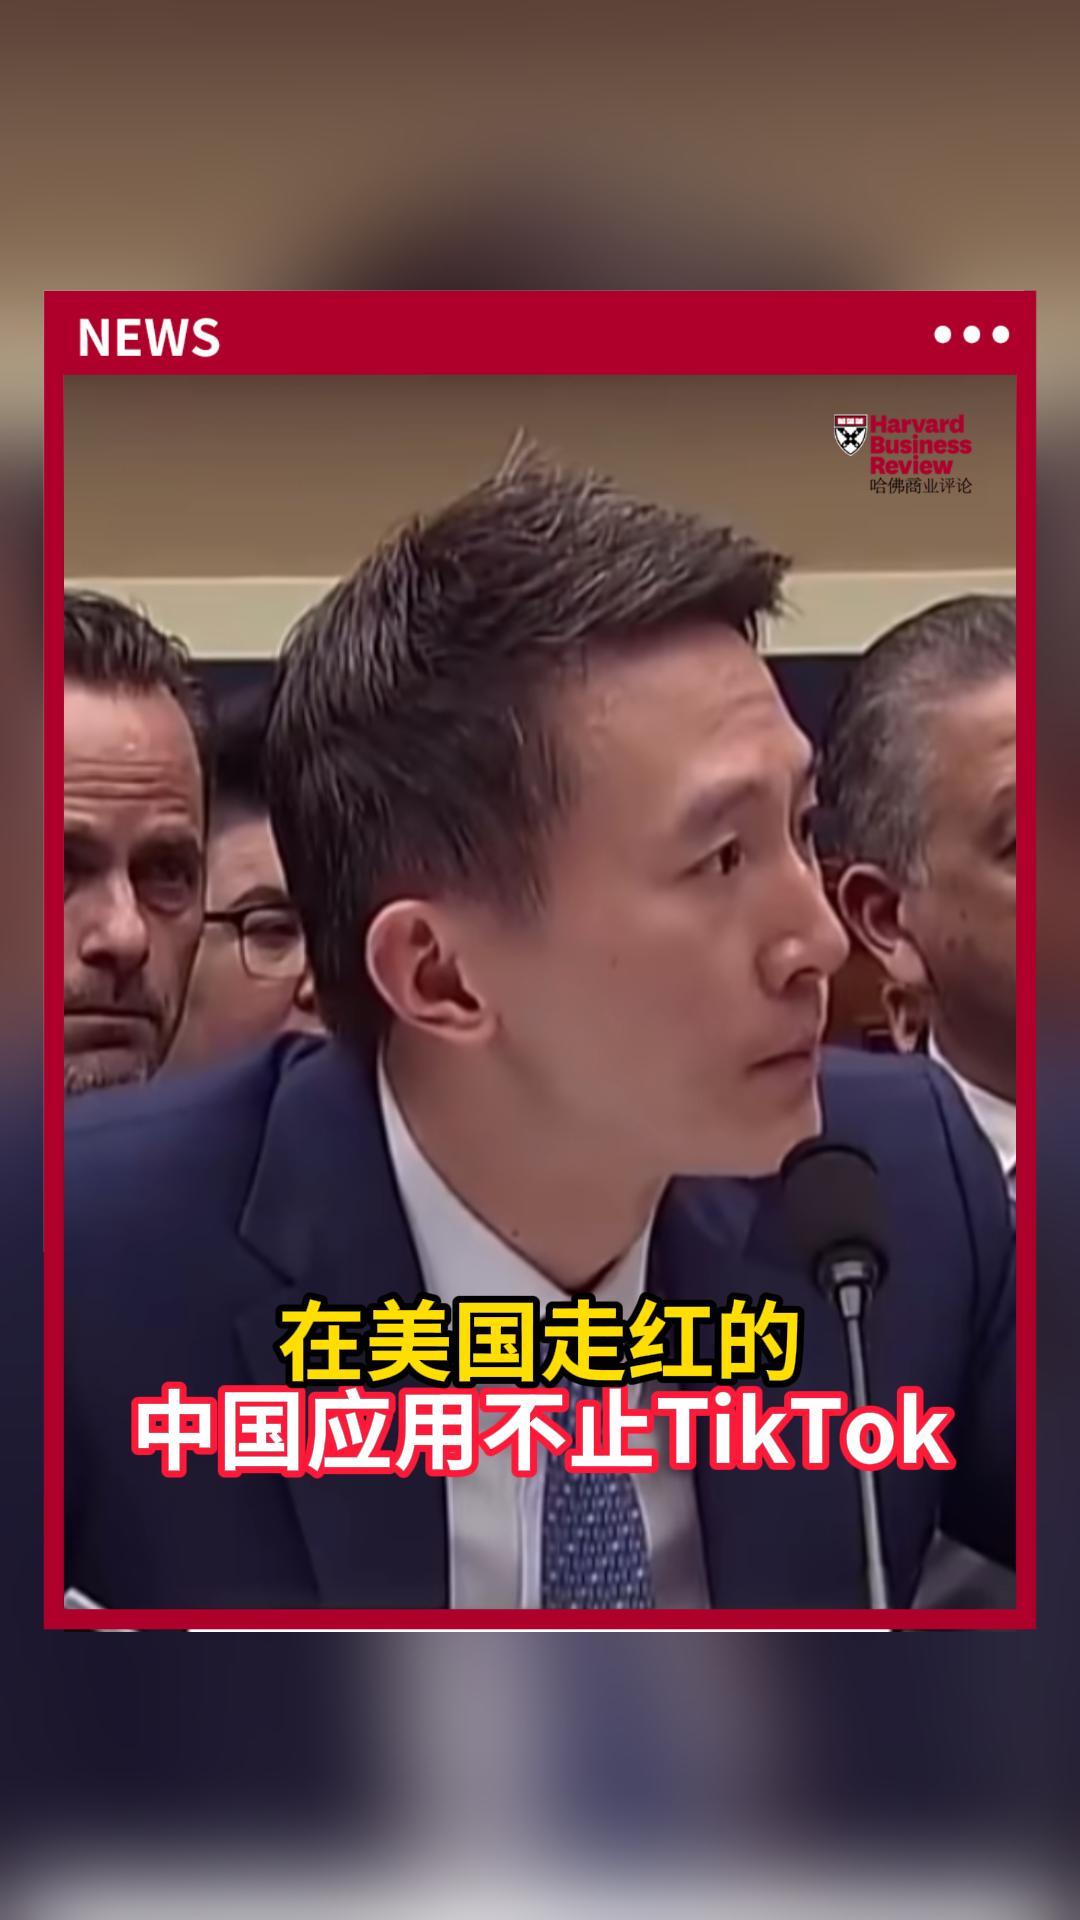 在美国走红的中国应用不止TikTok